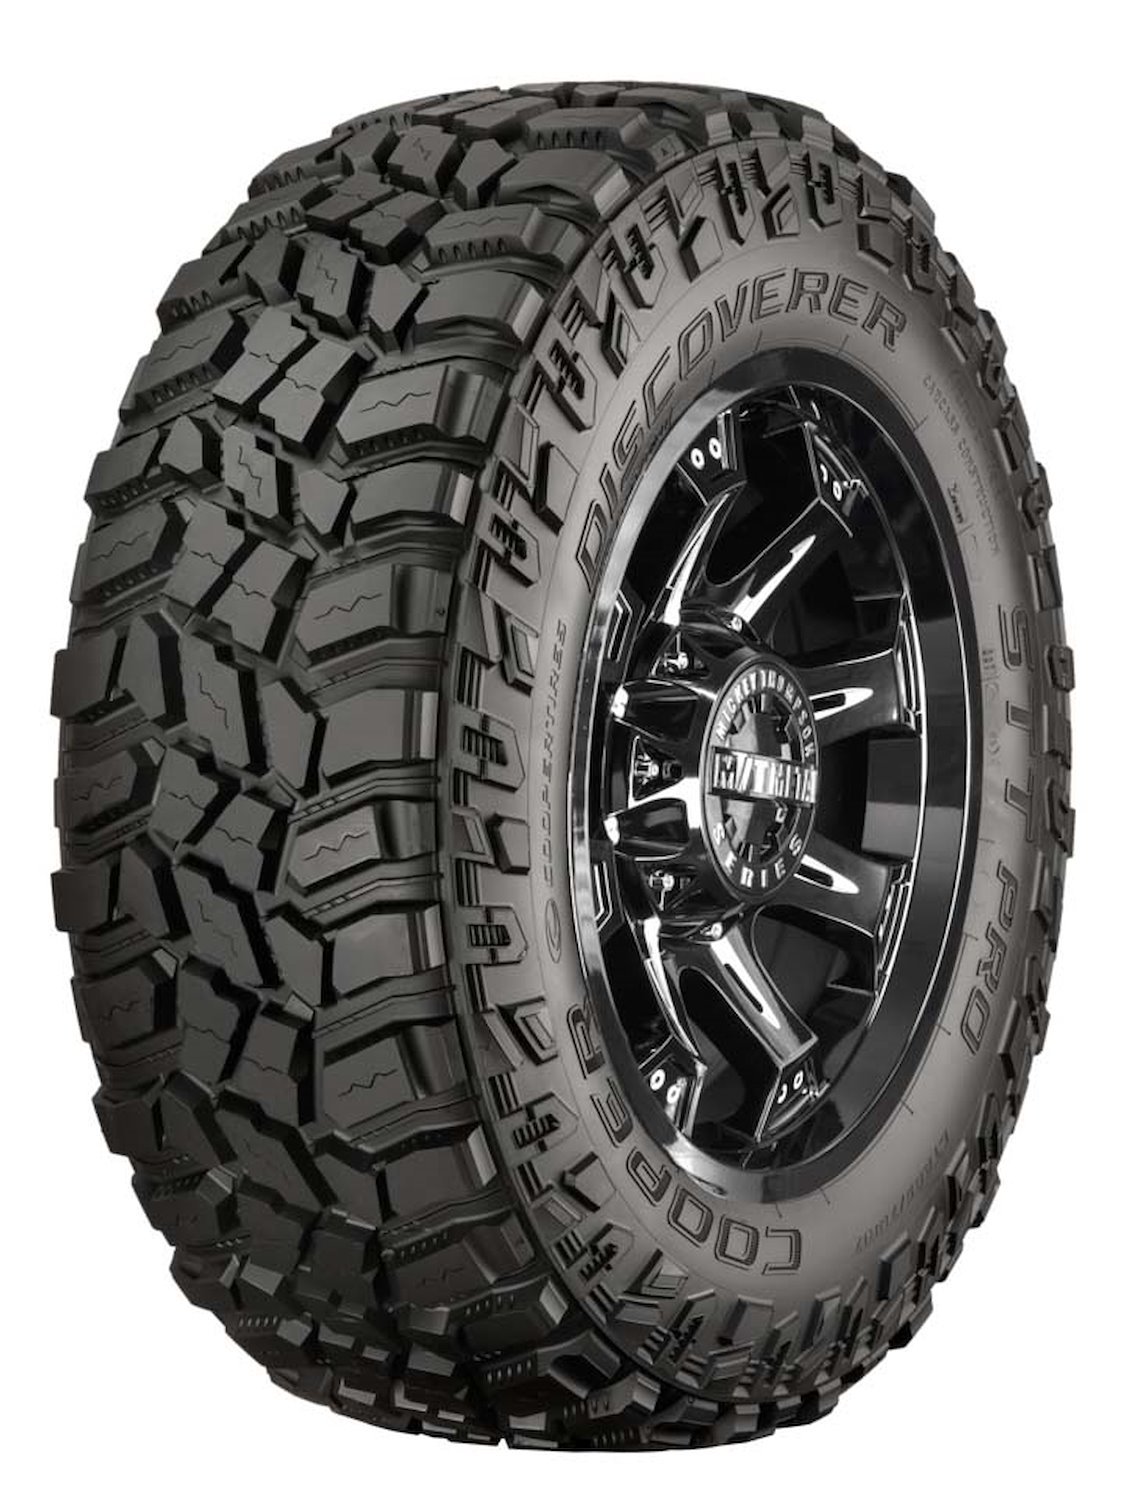 Discoverer STT PRO All-Terrain Tire, 35X12.50R15LT